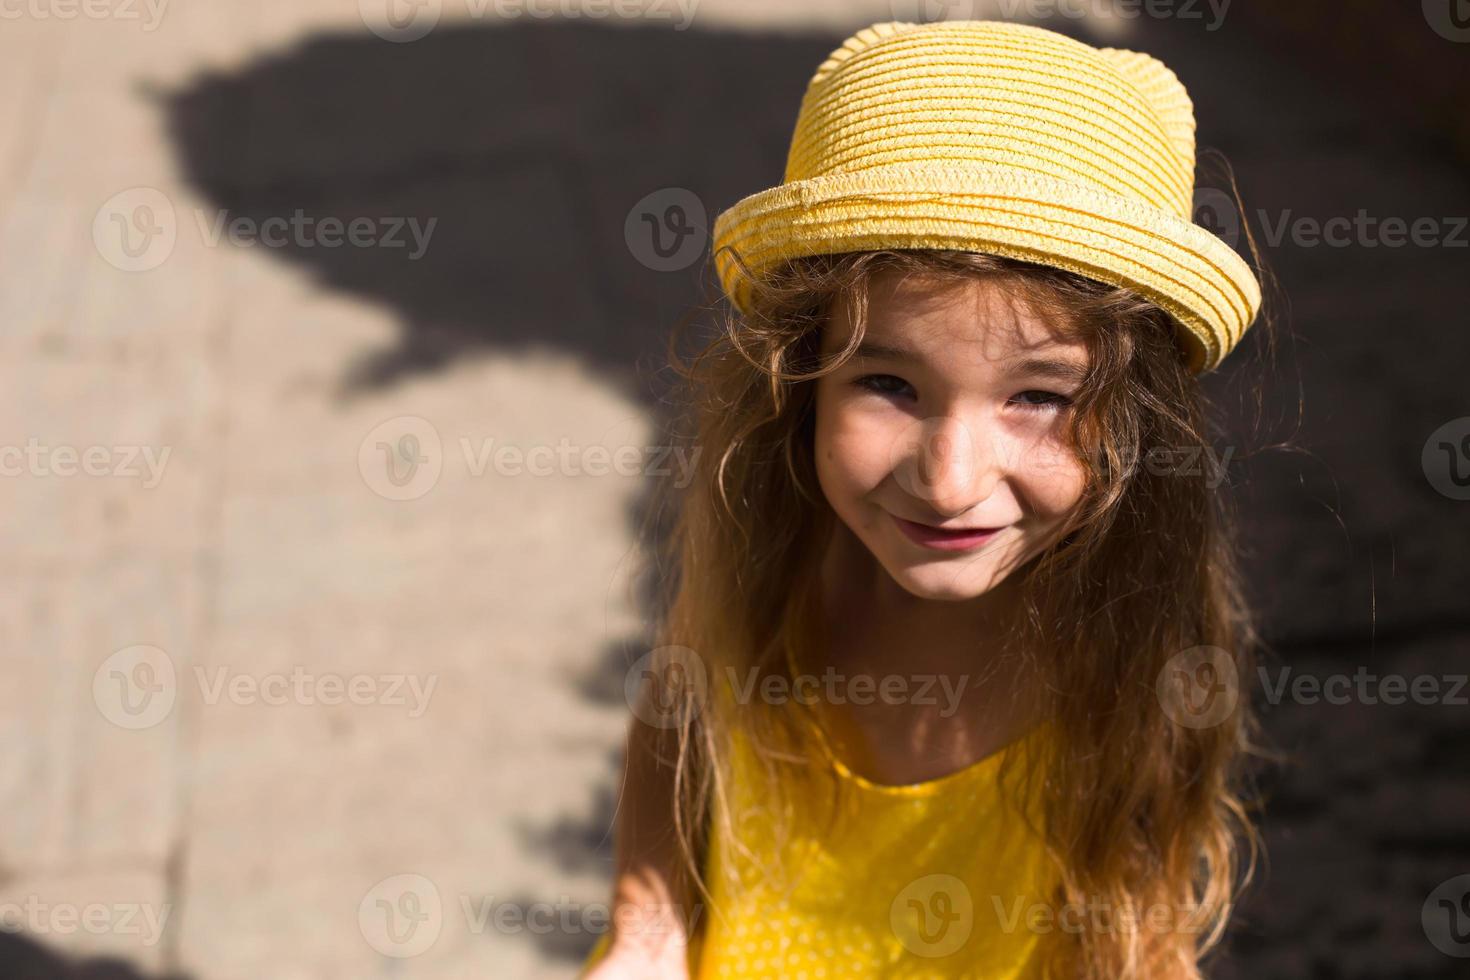 gros plan d'un portrait d'été d'une fille dans un chapeau jaune et une robe d'été. l'heure d'été ensoleillée, la liberté, photo